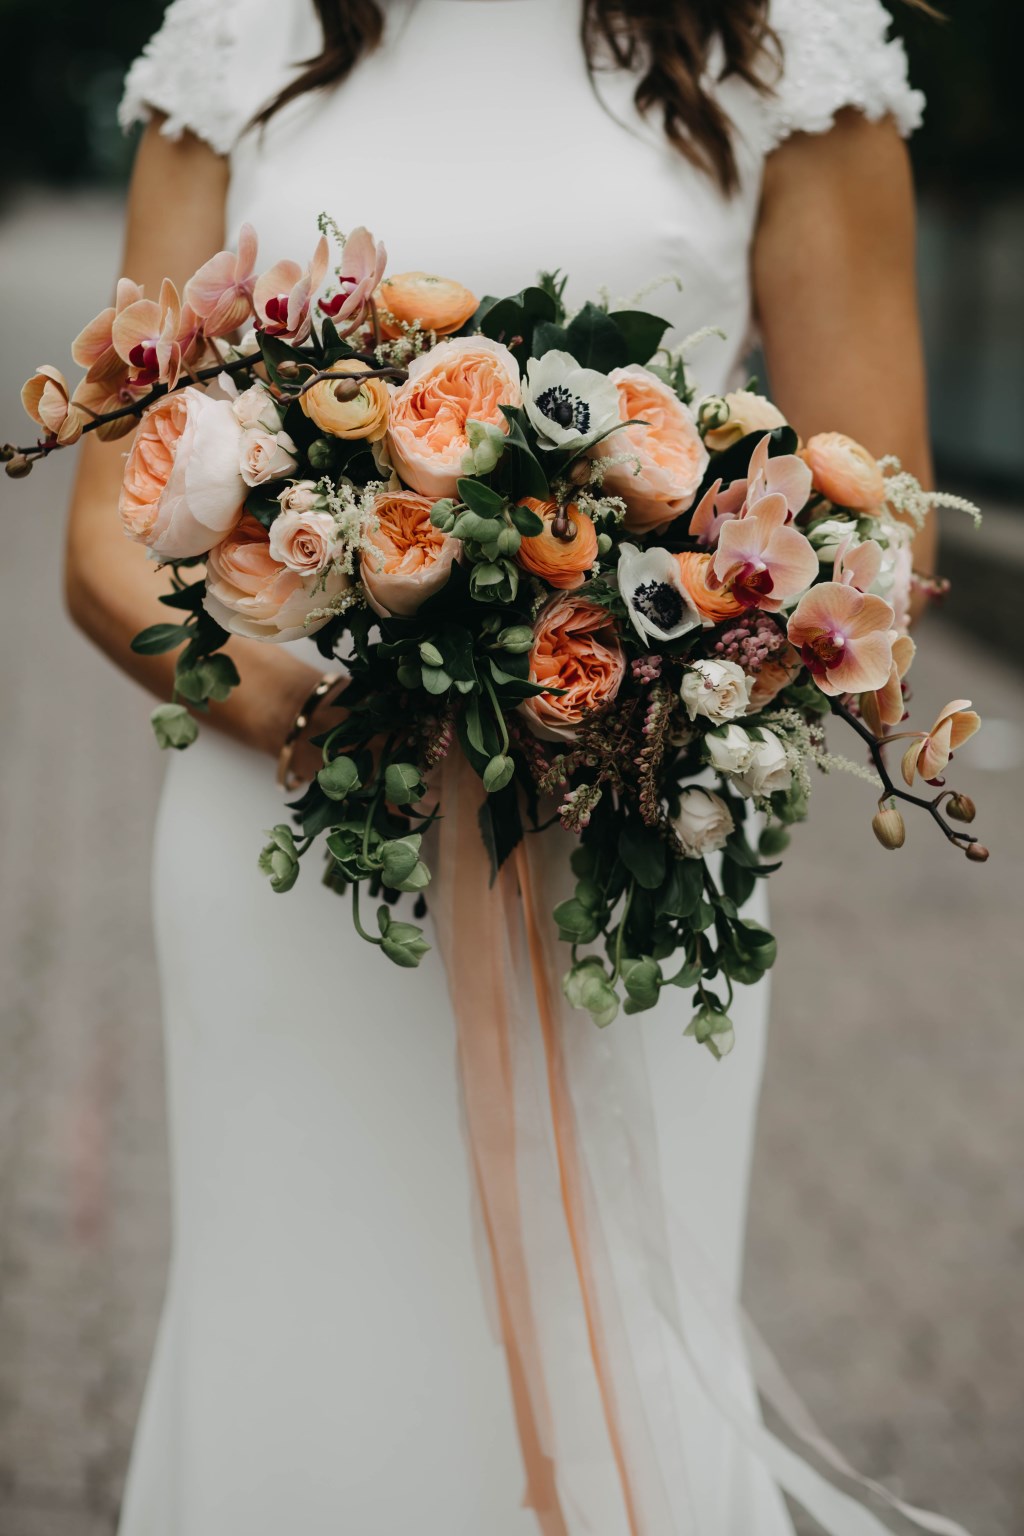 exotischer Brautstrauß mit Rosen, Annemonen und Orchideen in Apricot-Farben